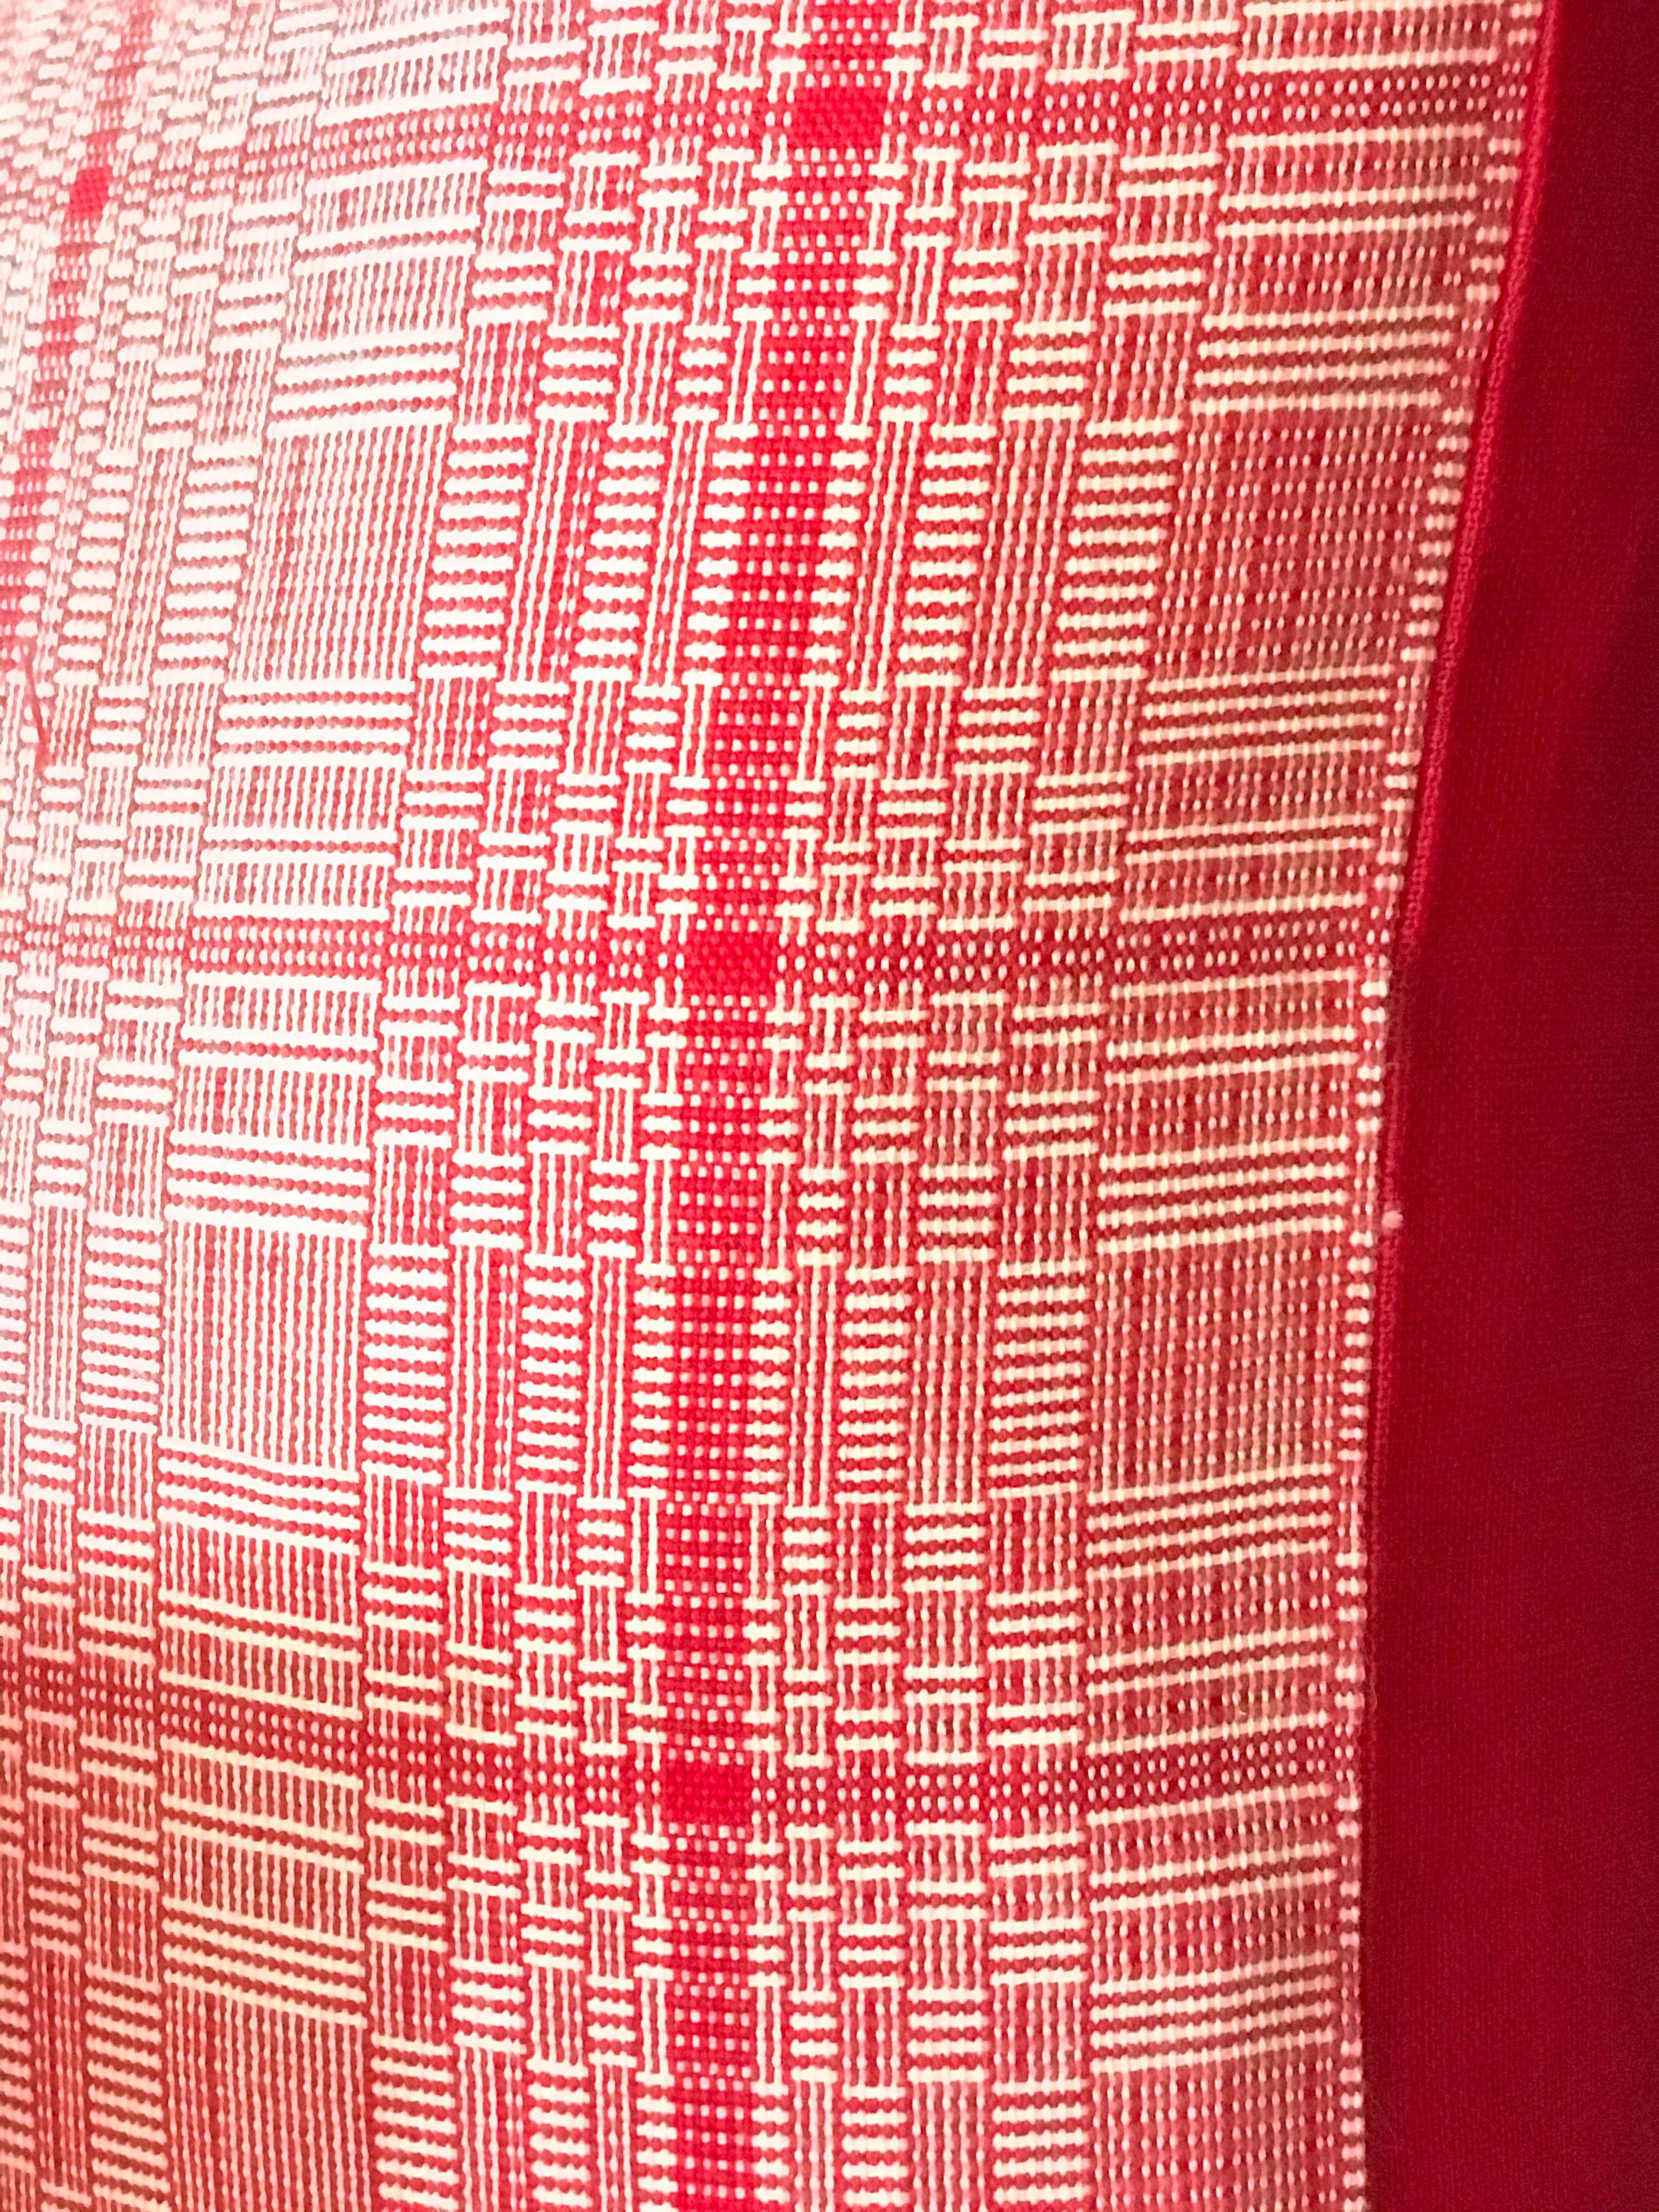 Red Binakul Cushion Cover